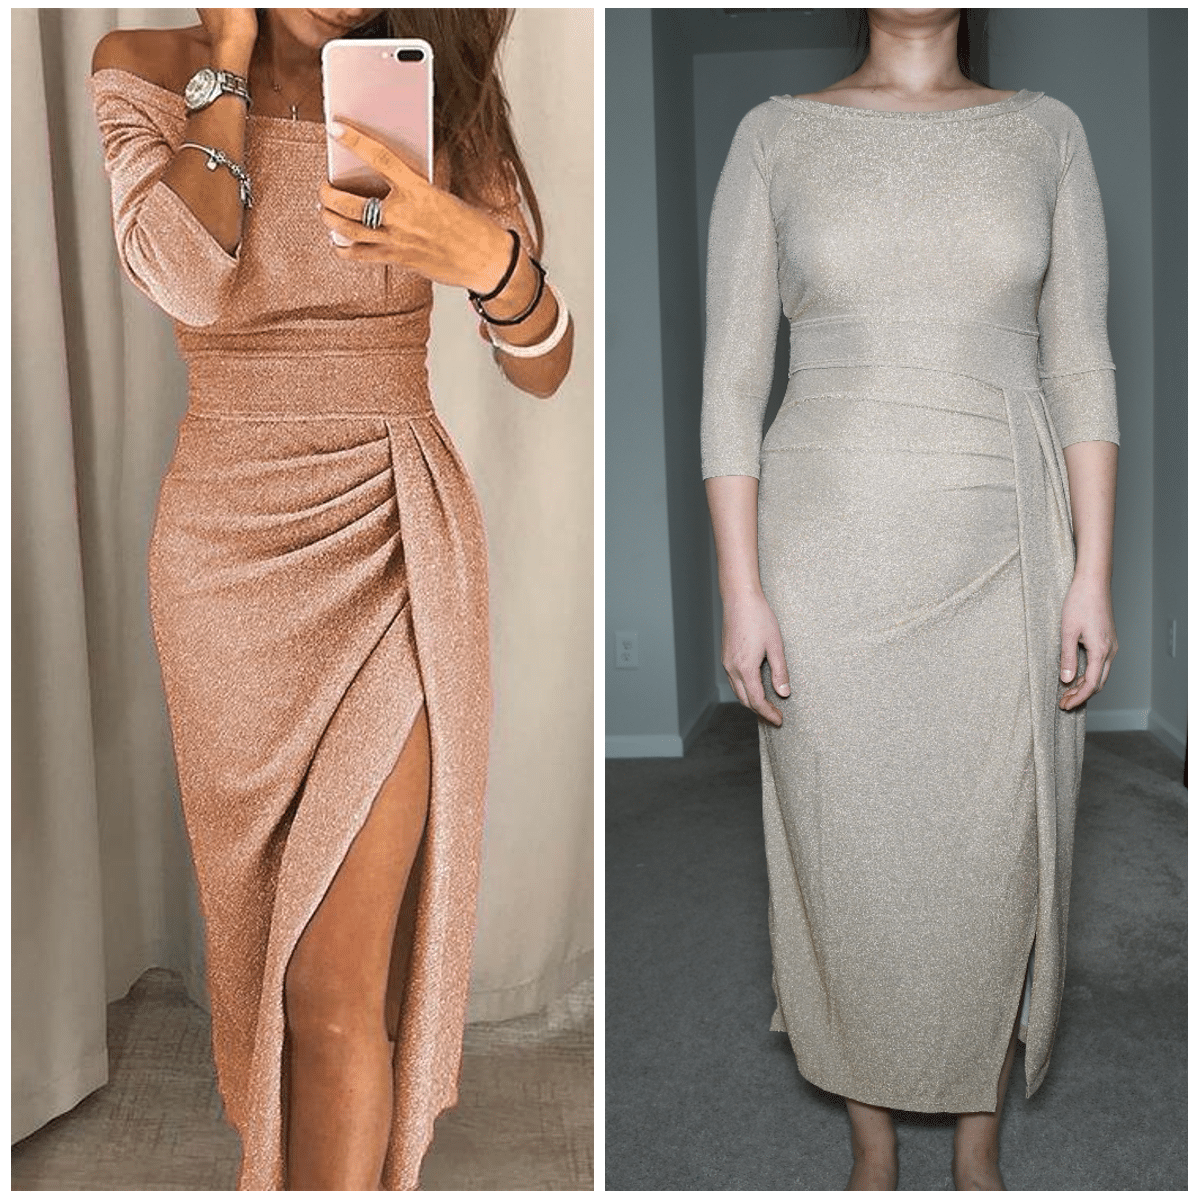 moxidress glitter dress comparison